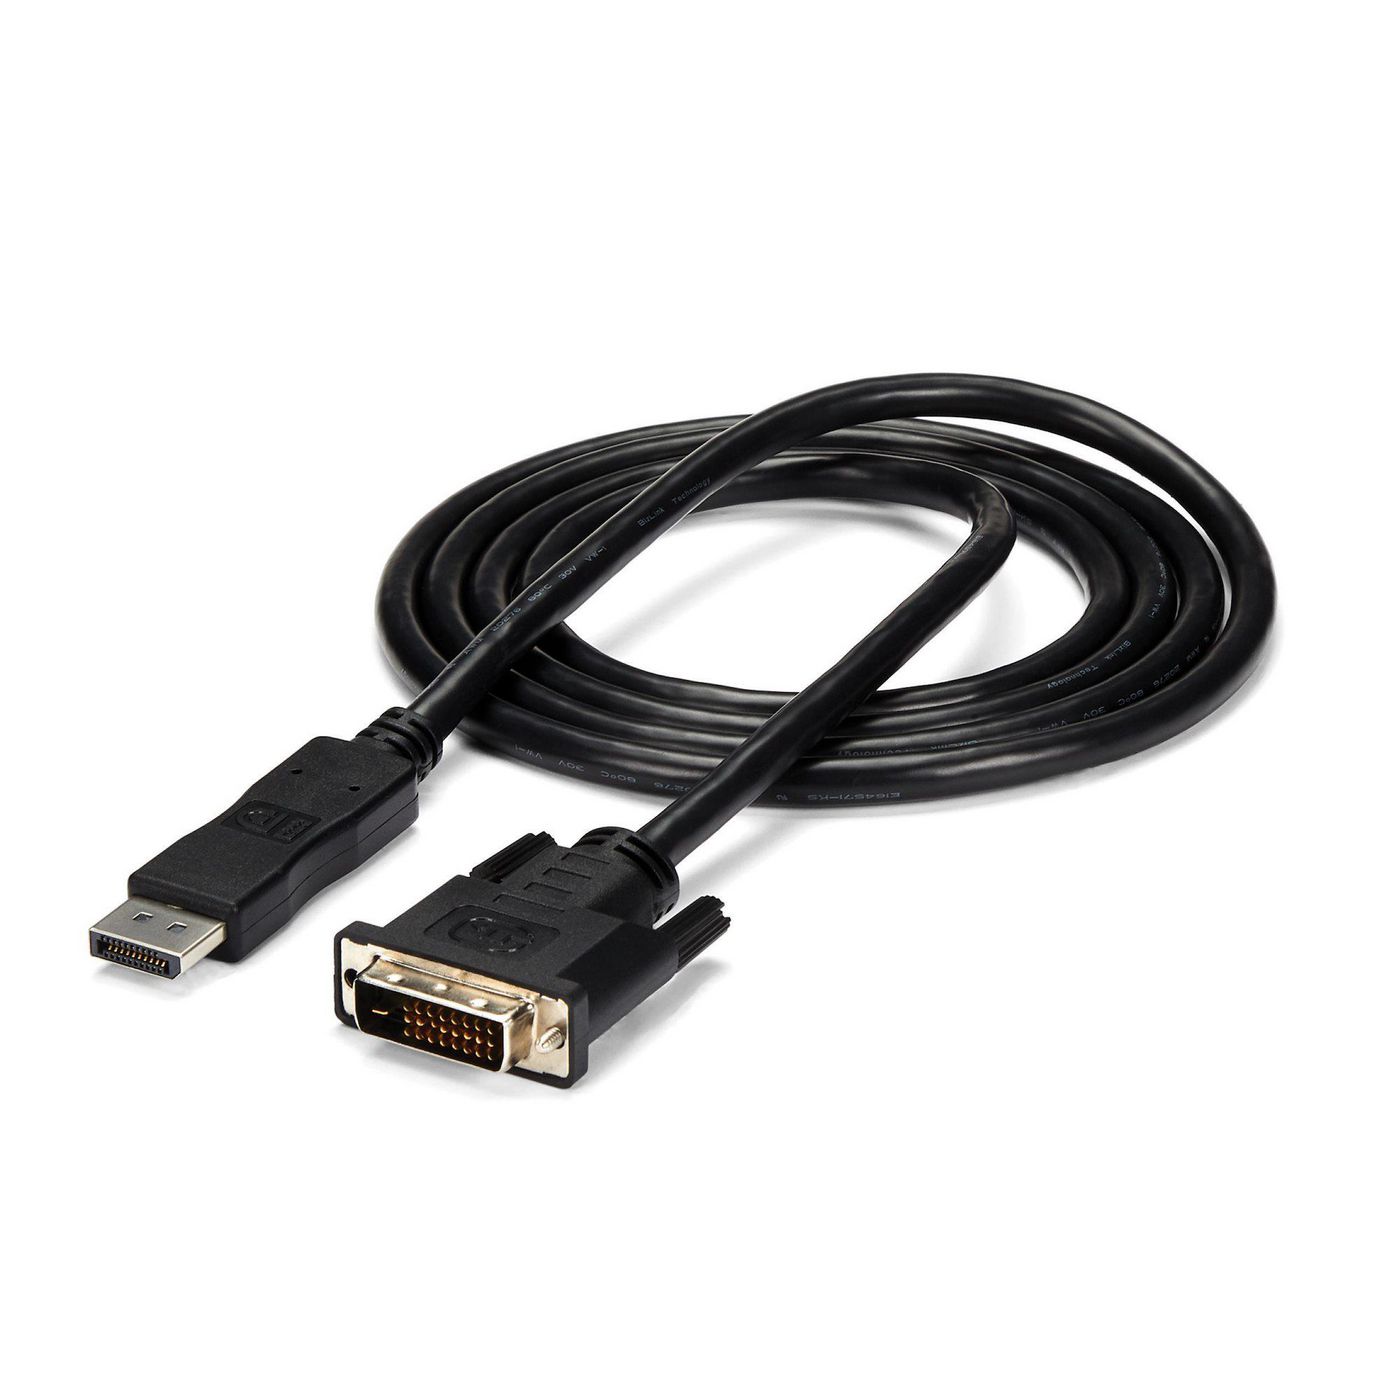 STARTECH.COM 1,8m DisplayPort auf DVI Kabel - DP (Stecker) zu DVI-D (Stecker) Video Konverter Kabel